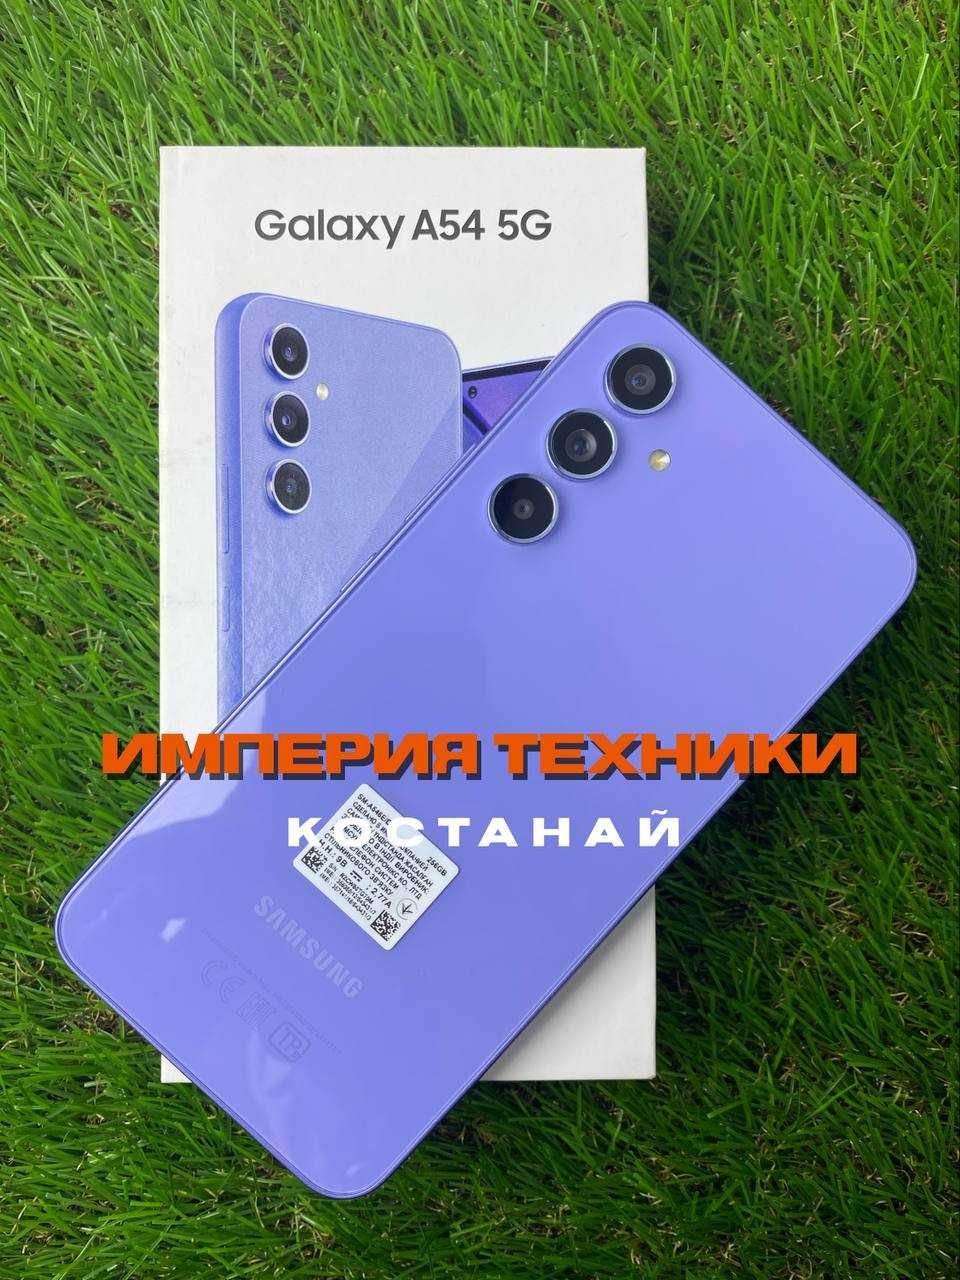 Samsung A54 256/ОБМЕН/РАССРОЧКА/ГАРАНТИЯ/Самсунг А54 256